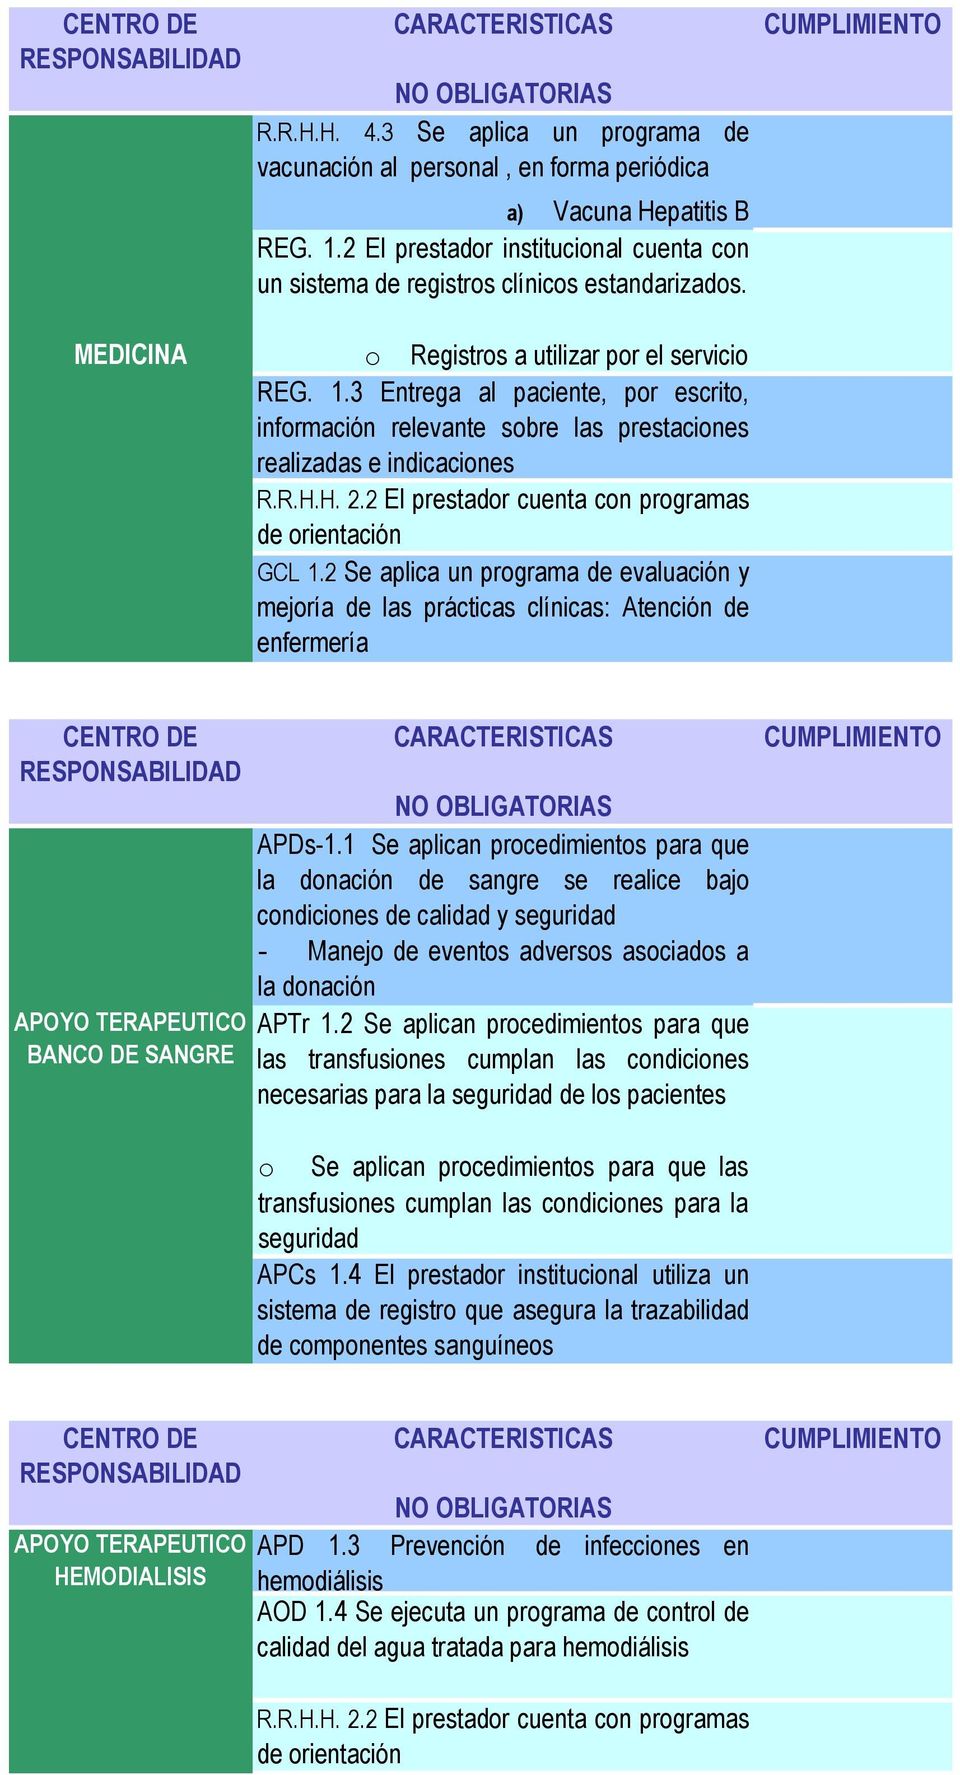 2 Se aplica un programa de evaluación y mejoría de las prácticas clínicas: Atención de enfermería APOYO TERAPEUTICO BANCO DE SANGRE APDs-1.